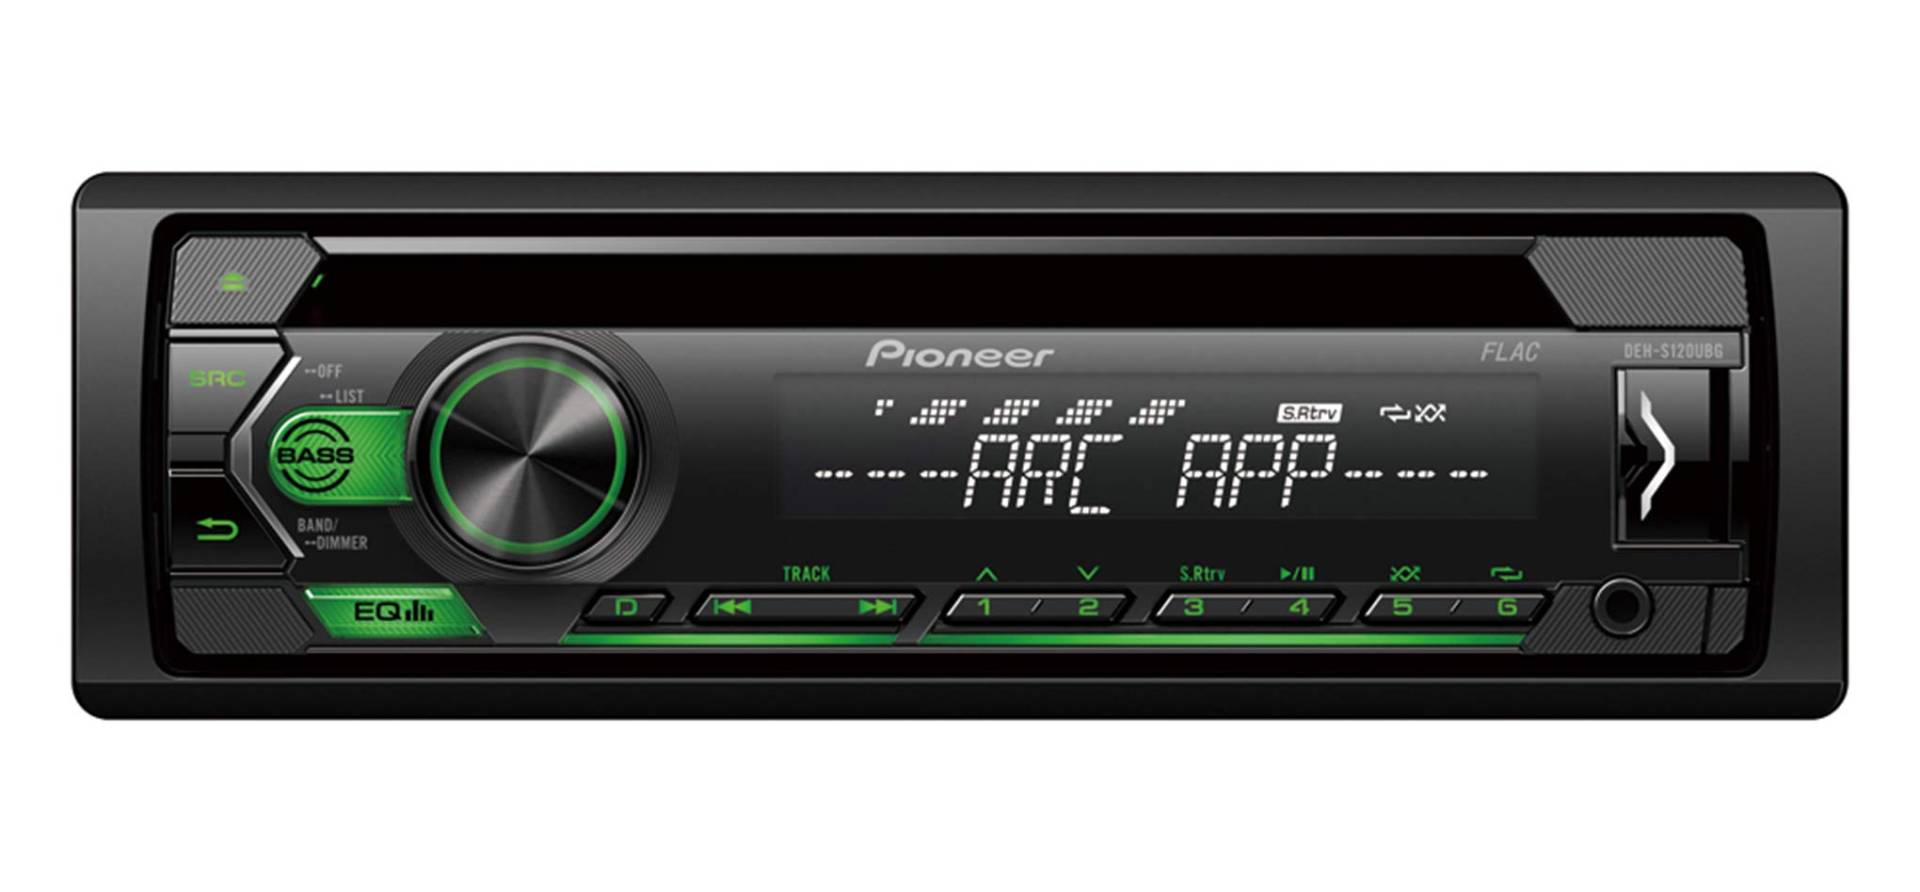 Pioneer DEH-S120UBG | 1DIN RDS-Autoradio mit grüner Tastenbeleuchtung | Display weiß | Android-Unterstützung | 5-Band Equalizer | CD | MP3 | USB | AUX-Eingang | ARC App von Pioneer